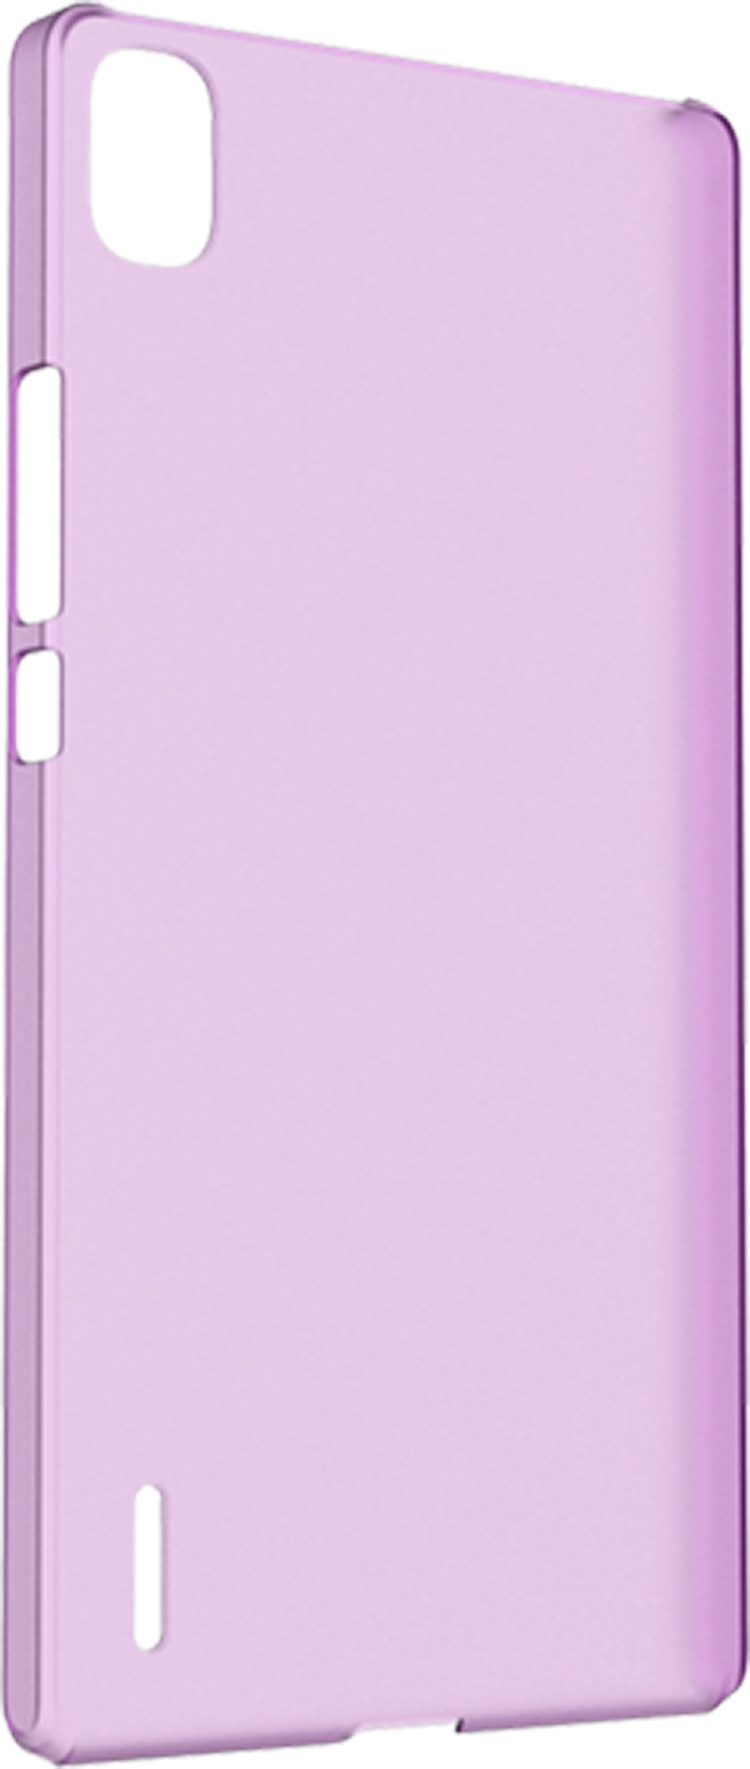 Hard case clear (violet) - Packshot